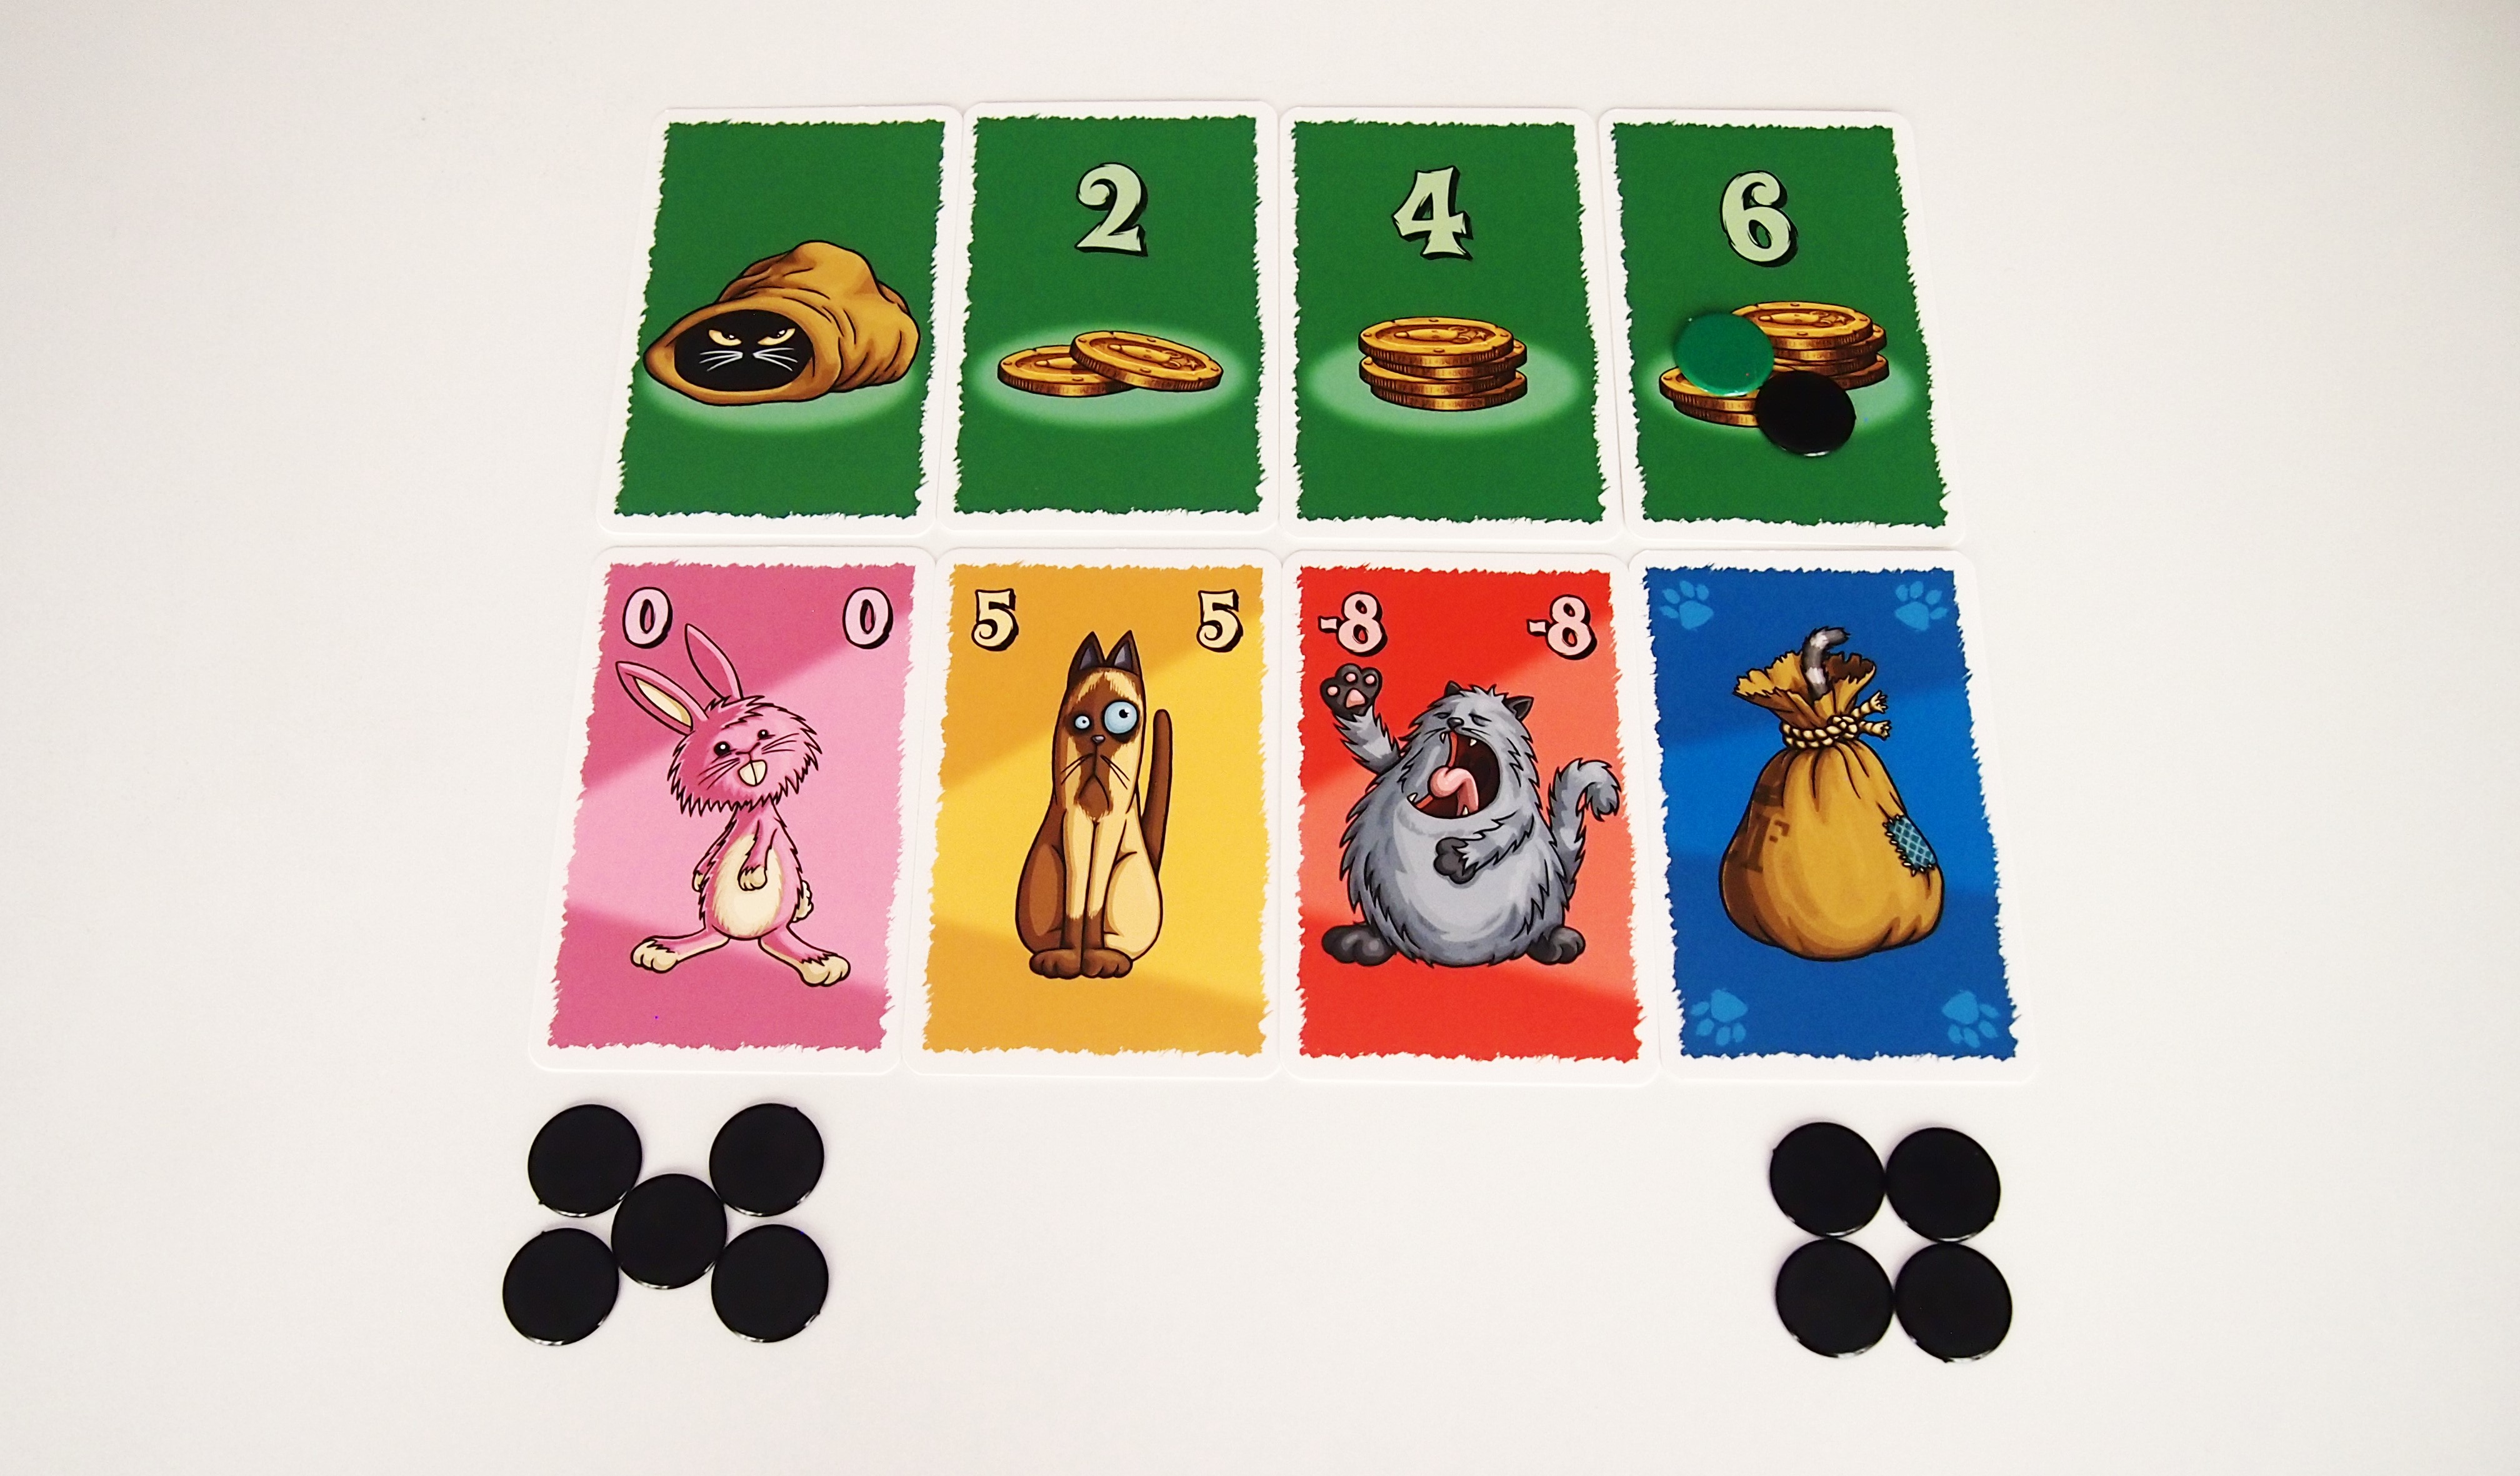 El jugador que más apueste se llevará todas las cartas. ¿Pero merece la pena arriesgarse o plantarse en último lugar para conseguir seis monedas? 